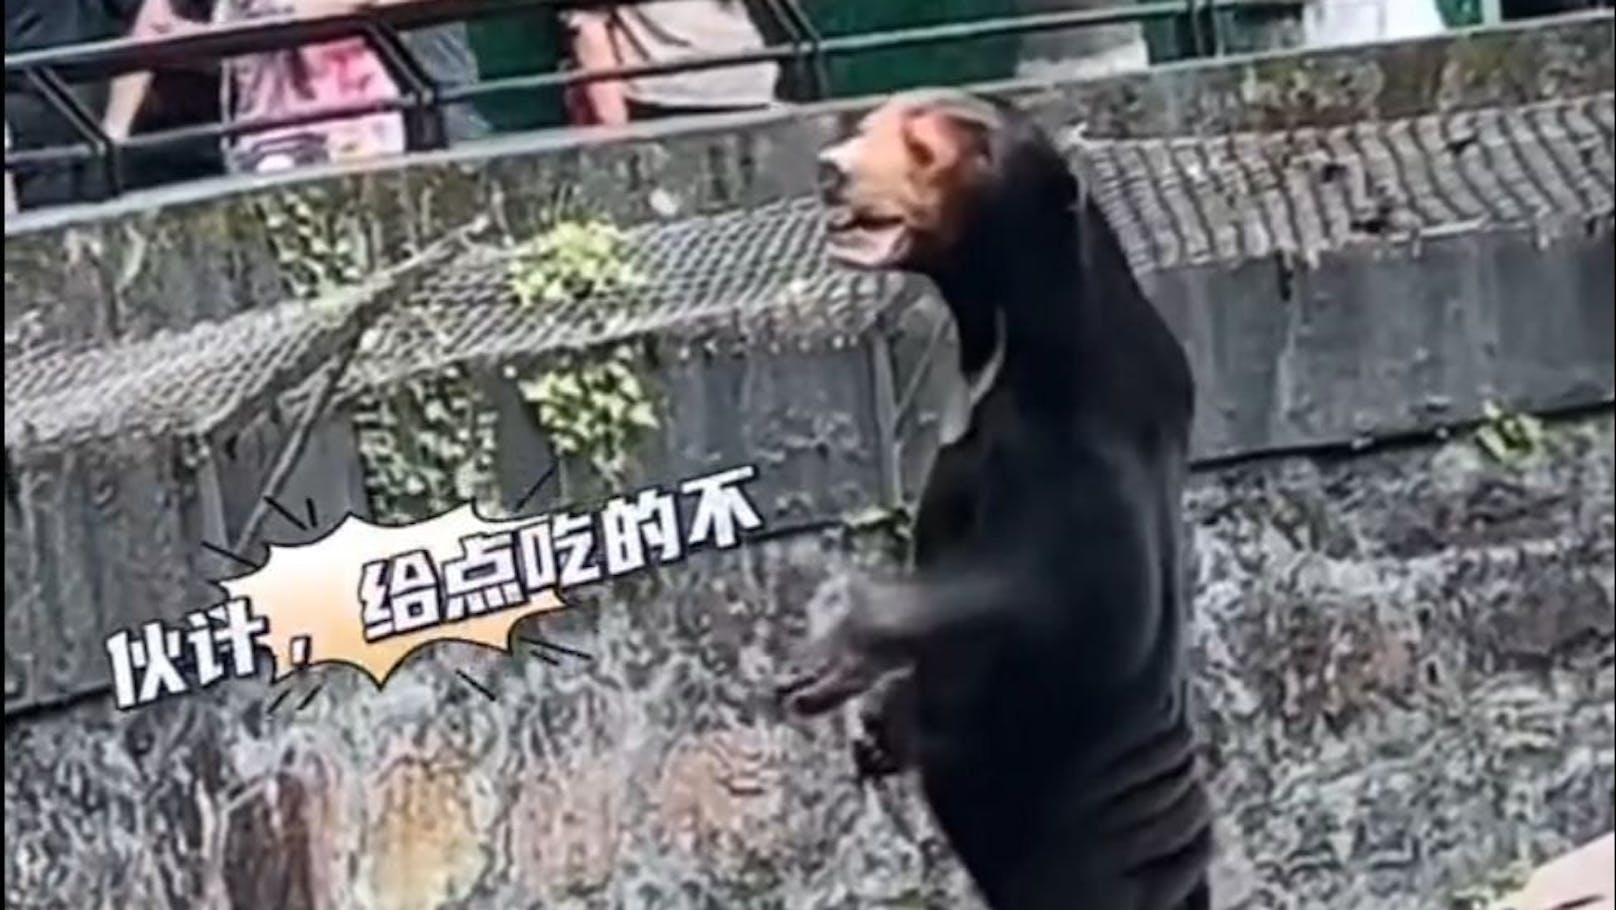 Mensch oder Bär? Diese Kreatur im Zoo von Hangzou wirft Fragen auf.